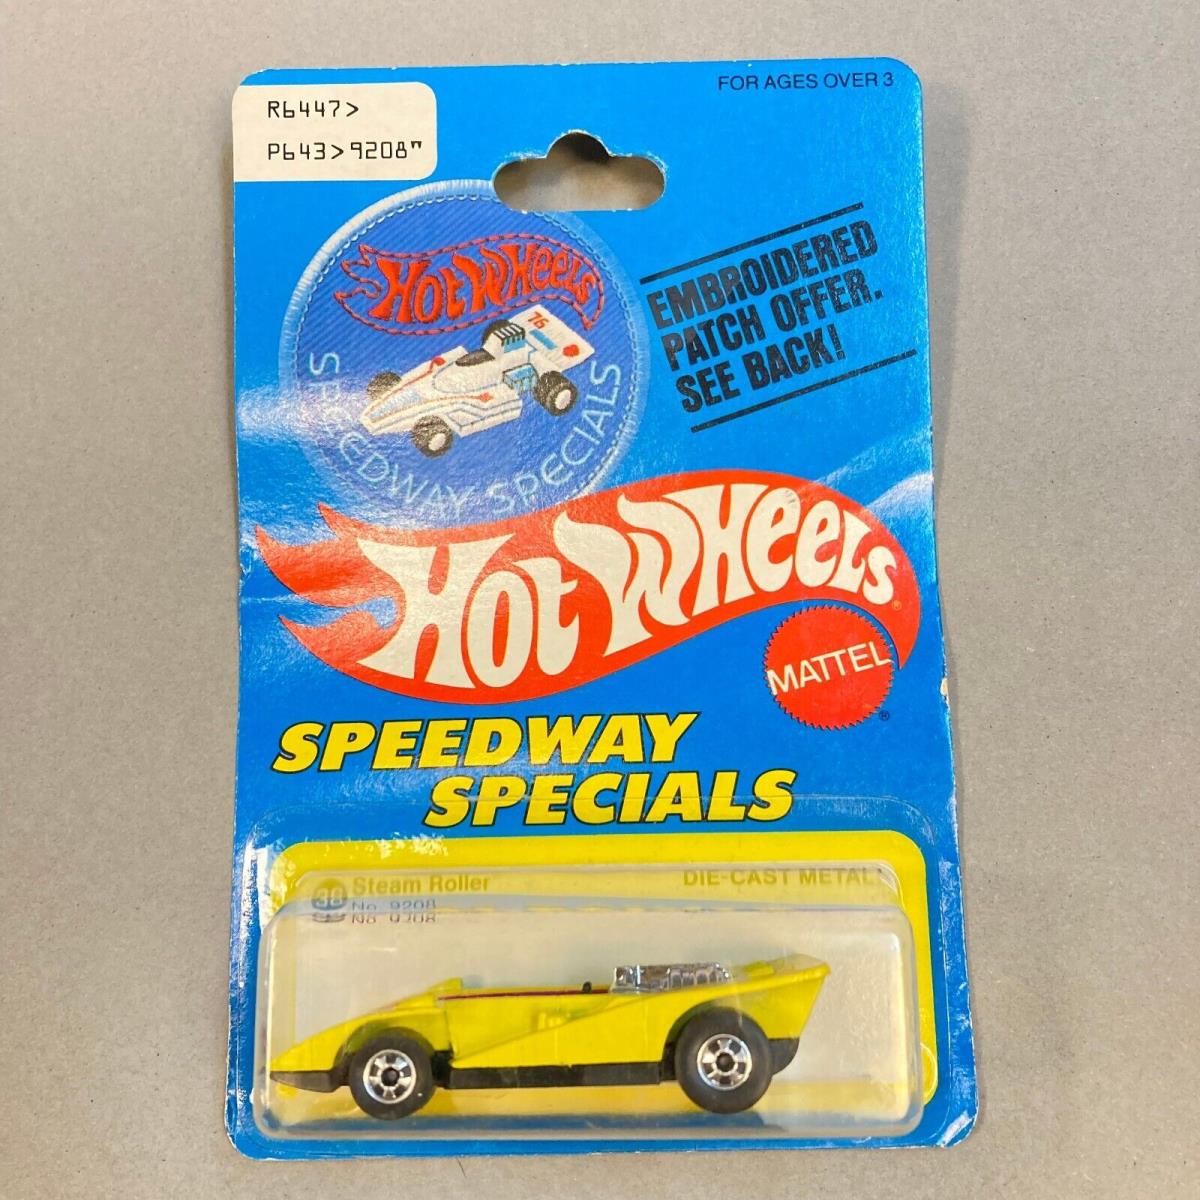 Hot Wheels 1977 Speedway Specials Steam Roller No. 9208 Patch Card Hong Kong